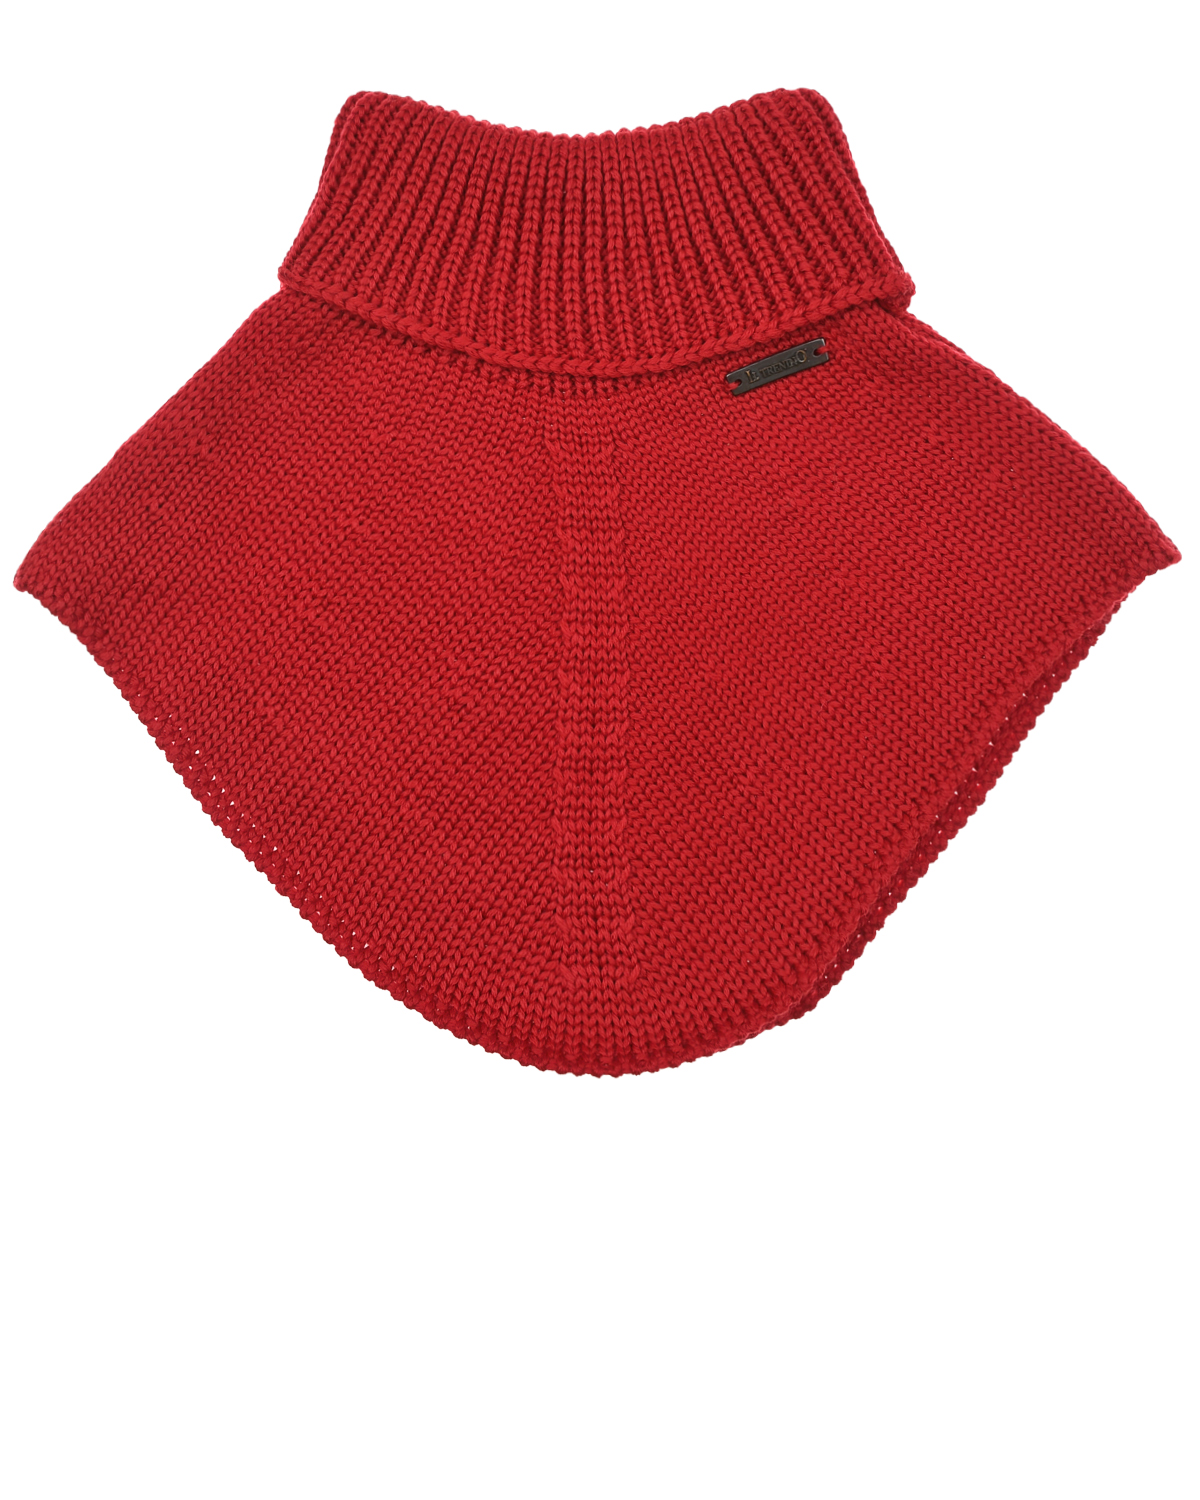 Красный шарф-горло из шерсти Il Trenino детский, размер unica - фото 1